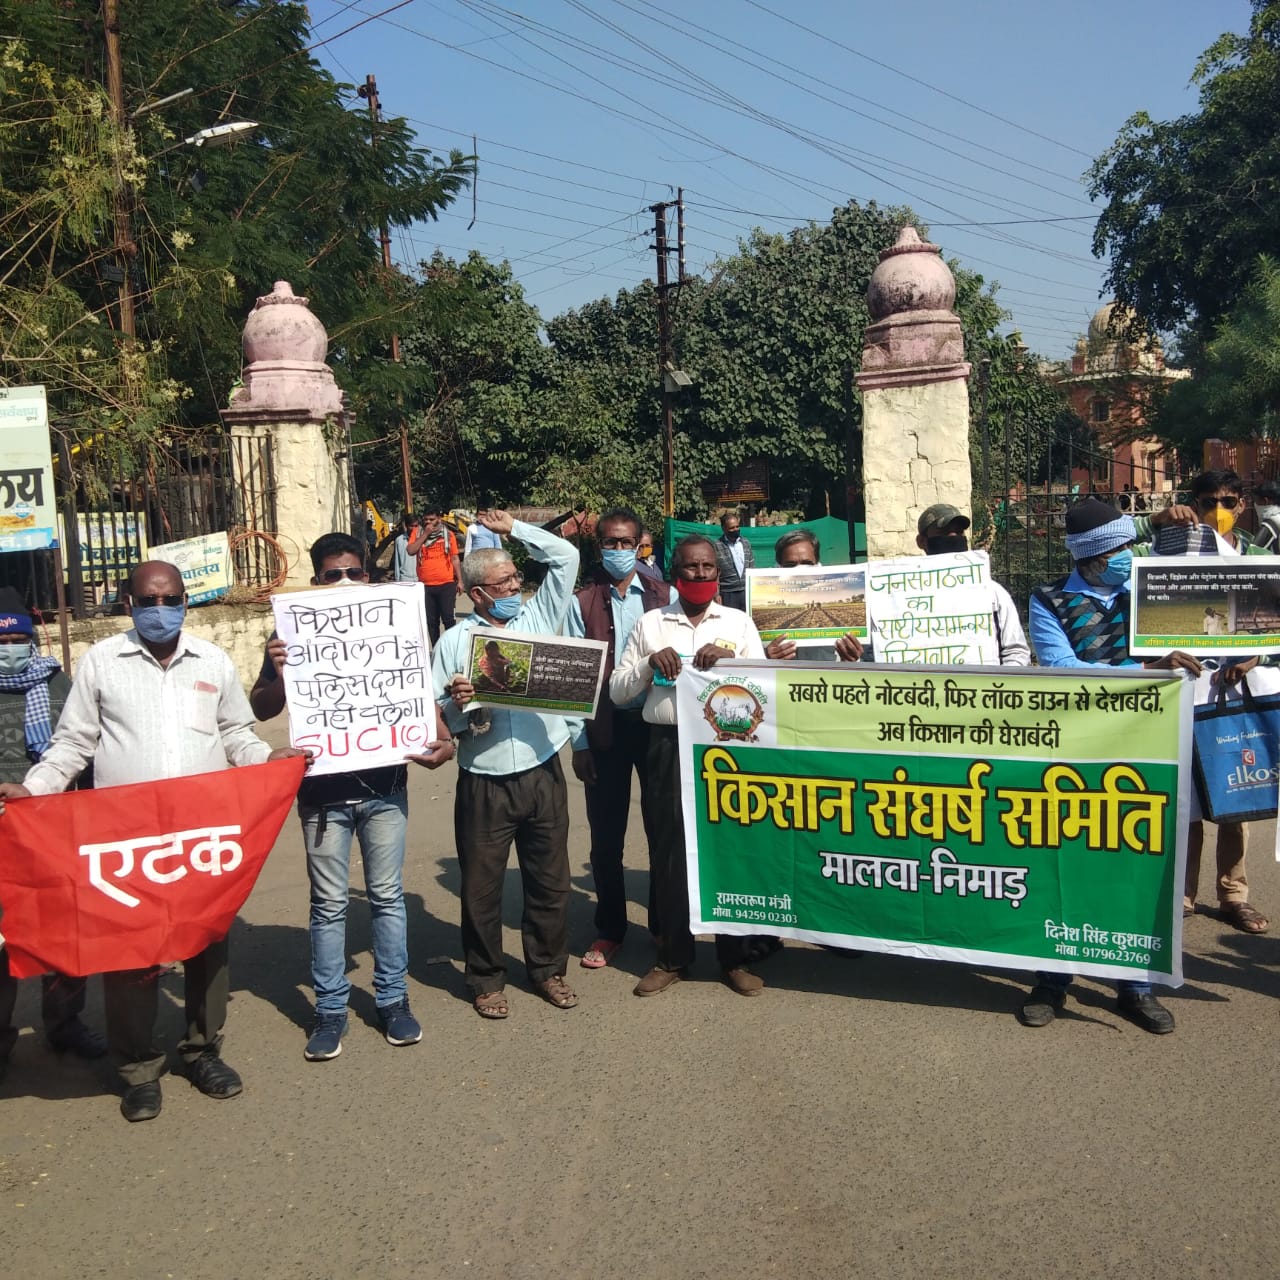 Farmers Protest: किसानों के दमन पर इंदौर में फूटा गुस्सा, कृषि कानूनों के खिलाफ प्रदर्शन